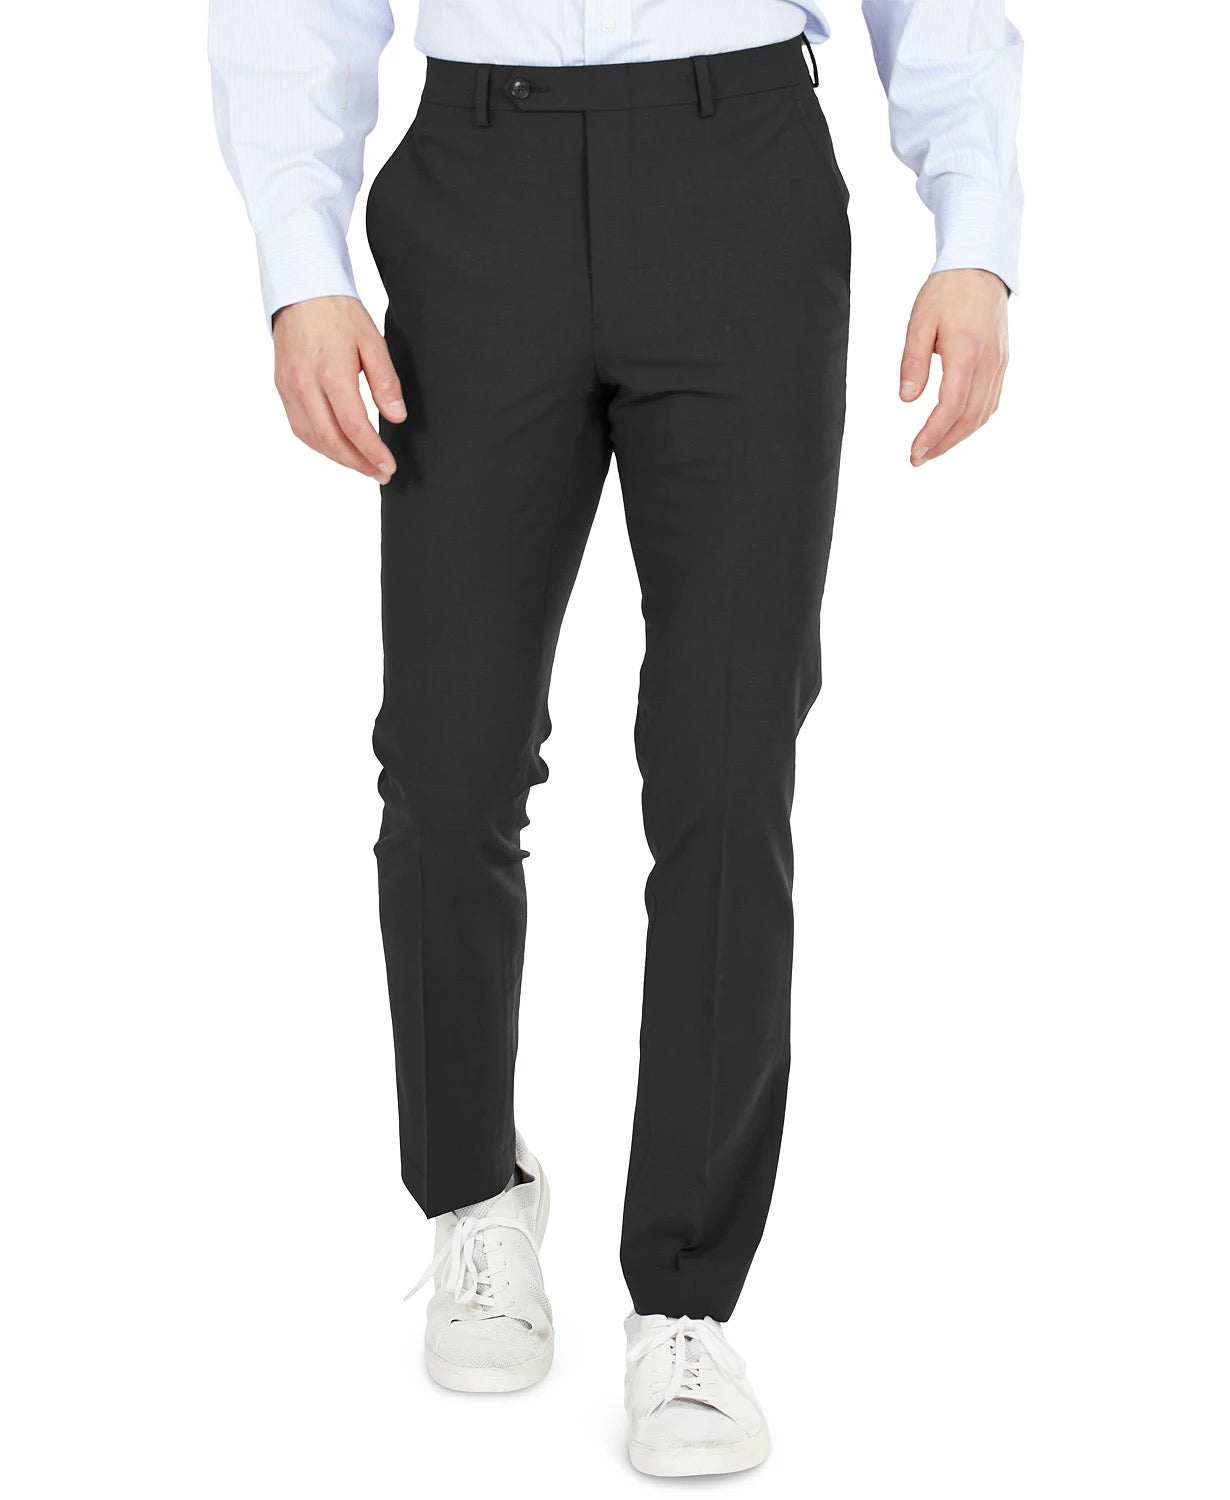 Bar III Men's Dress Pants 30 X 32 Black Skinny Fit Wrinkle-Resistant Wool